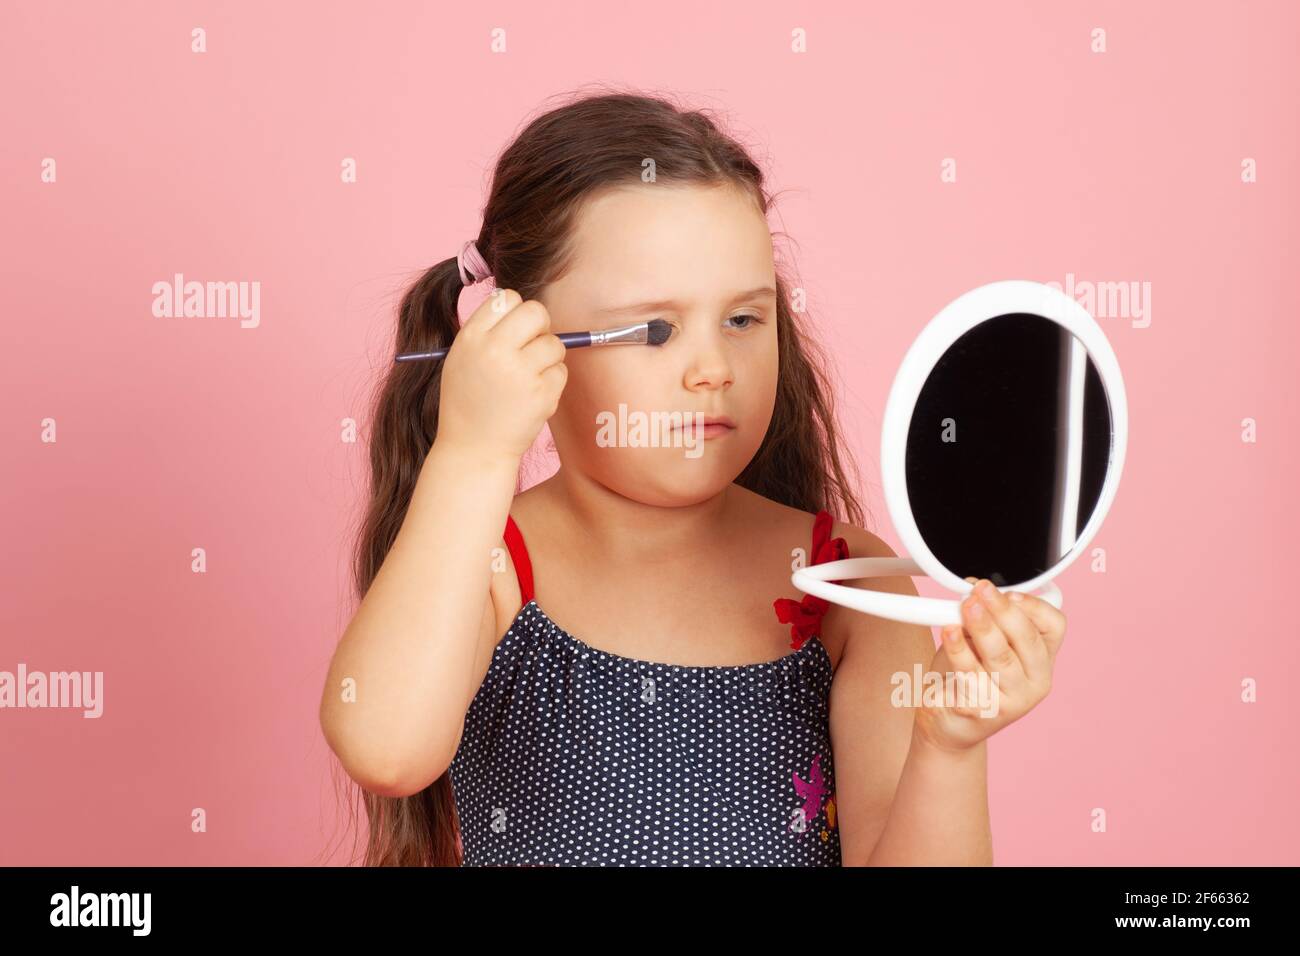 ragazza seria con i ponytails che dipingeva i suoi occhi con l'ombra degli occhi davanti ad uno specchio bianco, isolato su uno sfondo rosa Foto Stock